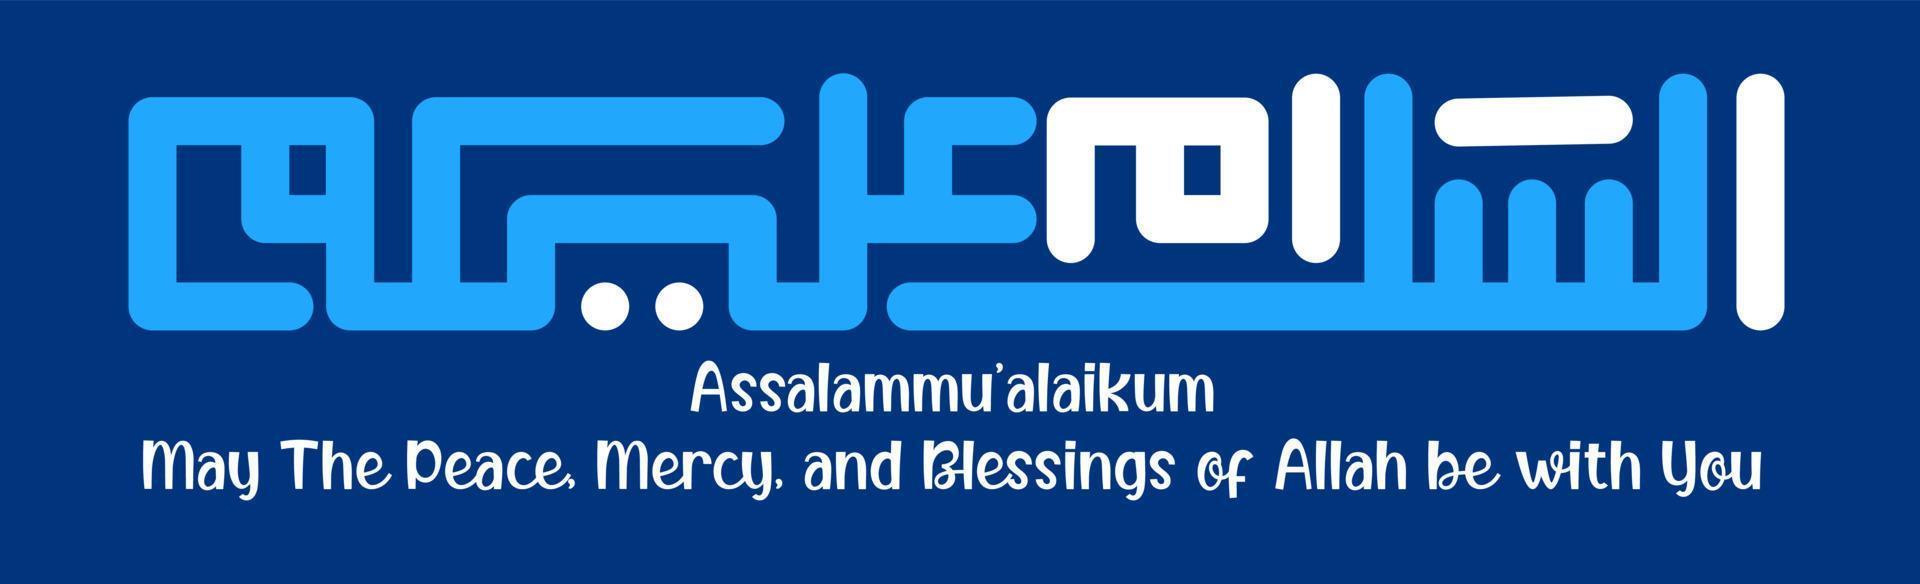 assalammualaikum is gemene vrede voor jou, kufic achtergrond logo icoon vector